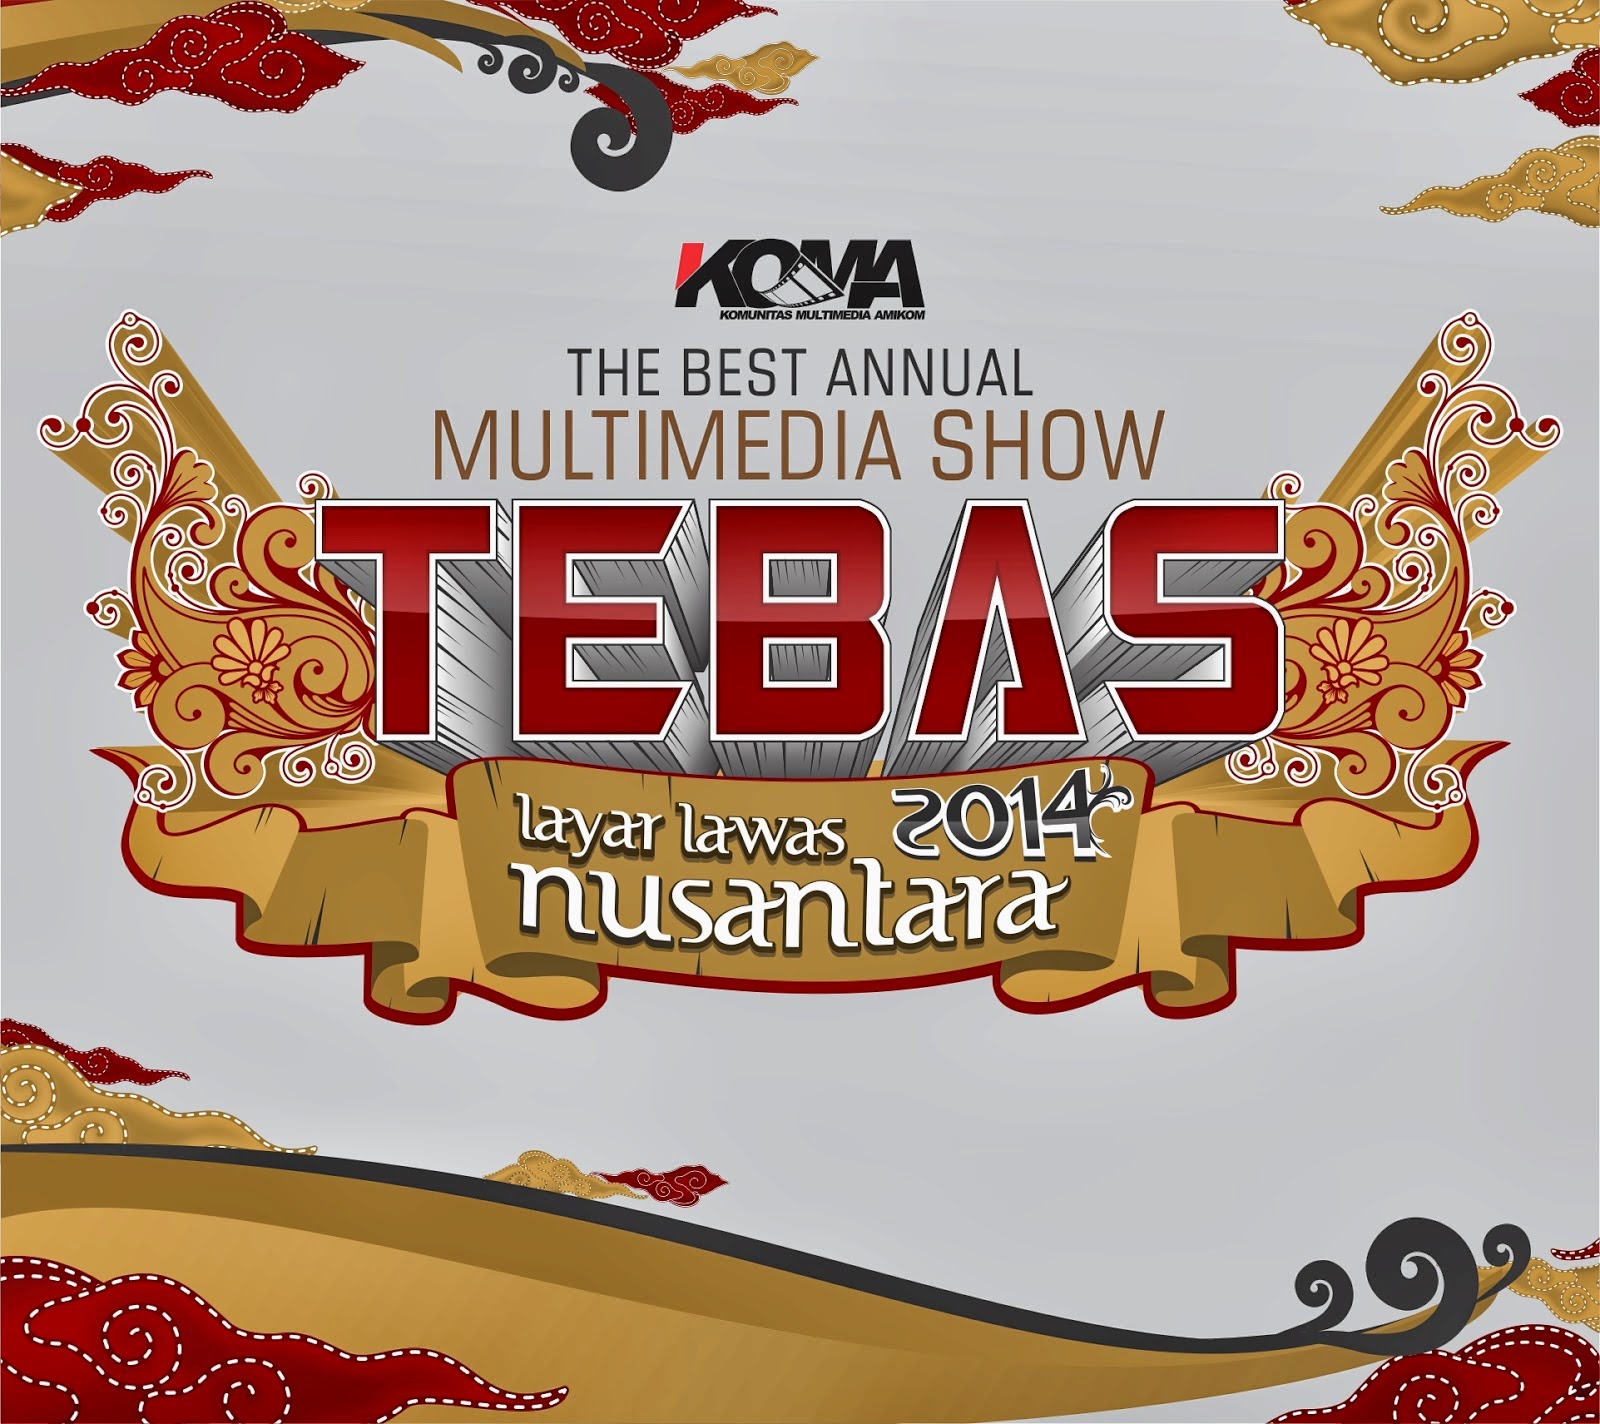 http://lintas7bintang.blogspot.com/2014/03/tebas-best-annual-multimedia-show.html